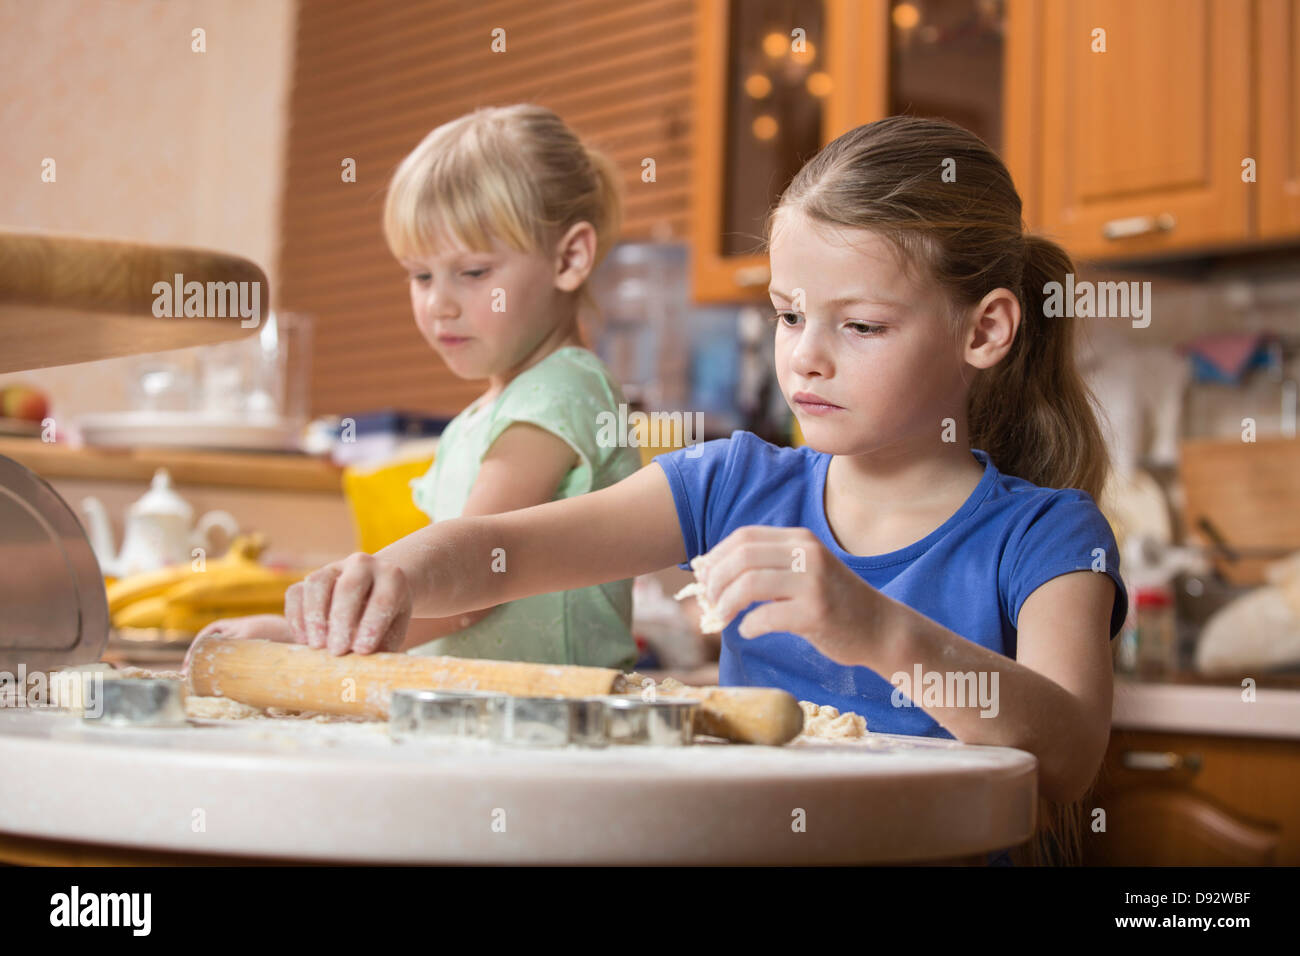 Two girls using baking dough Stock Photo